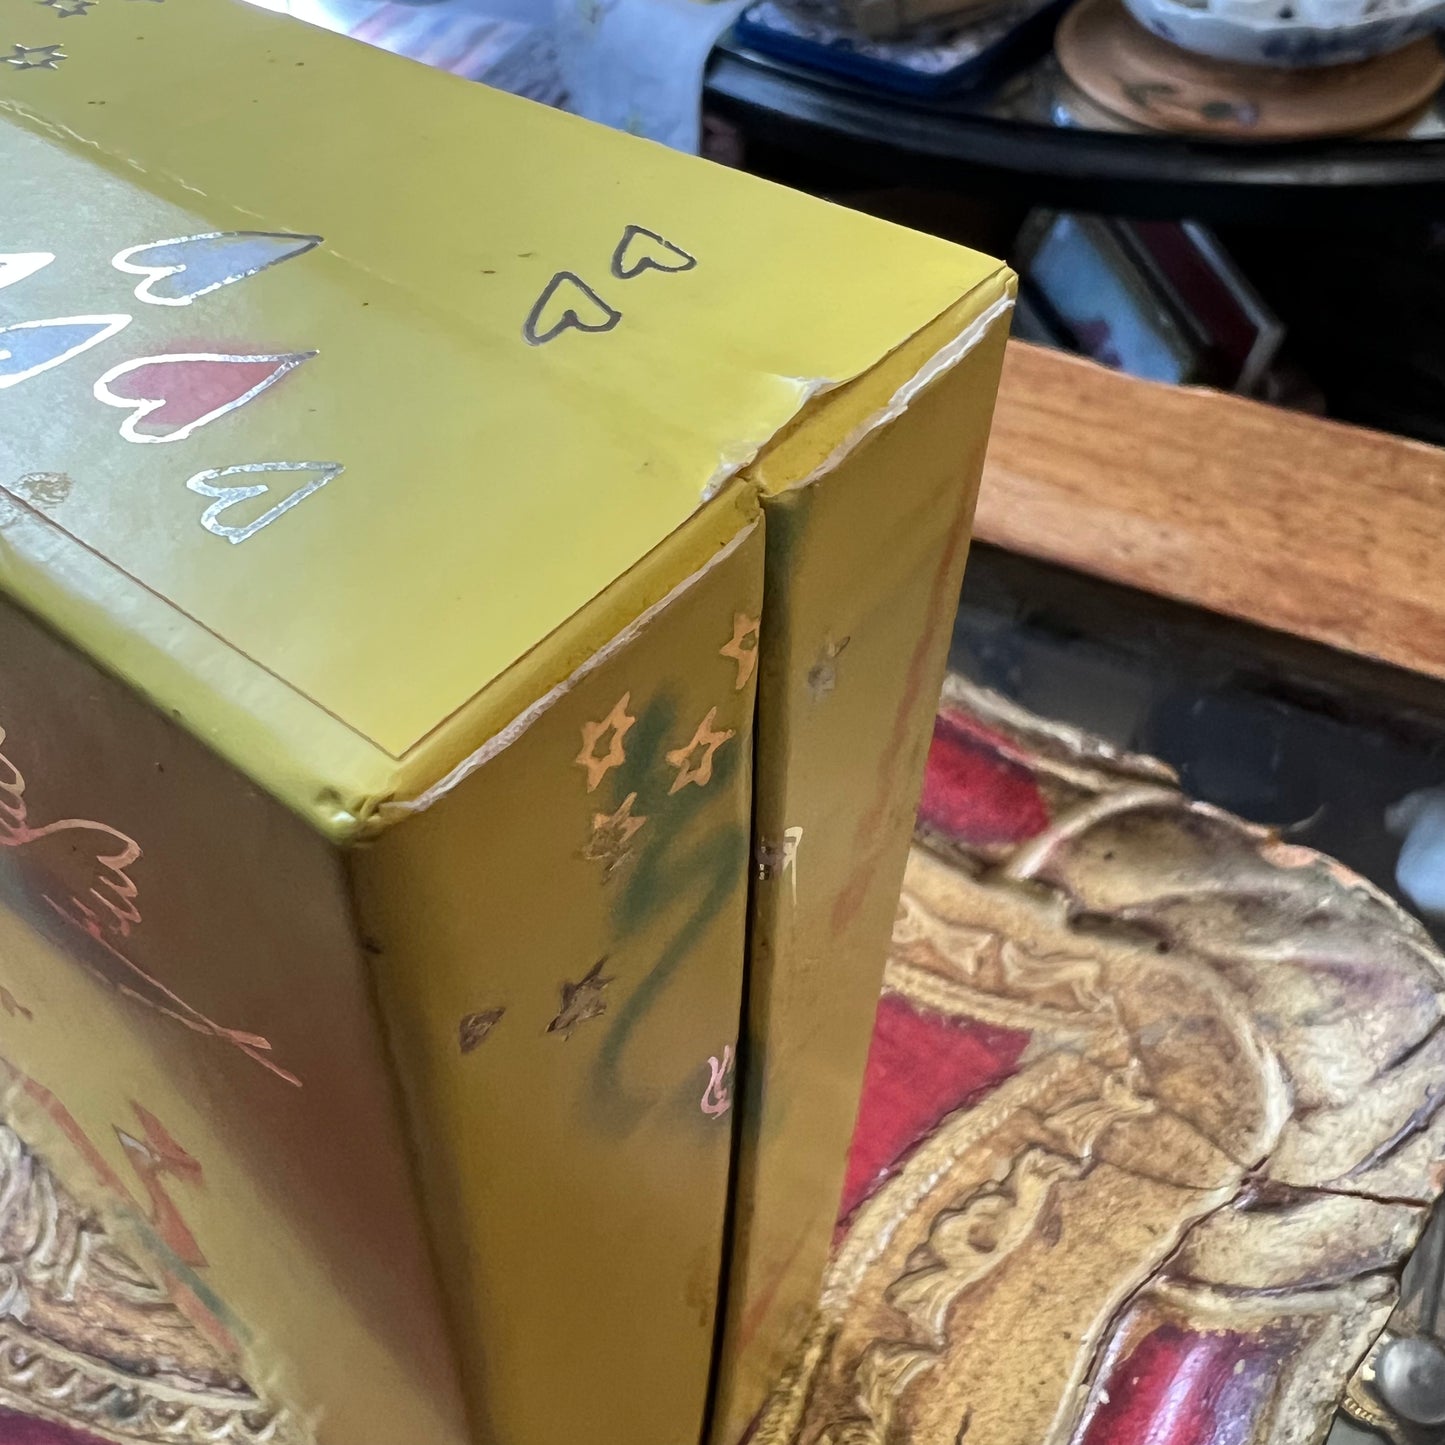 Vintage Nina Ricci Paris L’Air du Temps Original Gift Box Eau de Toilette Perfume & Soap